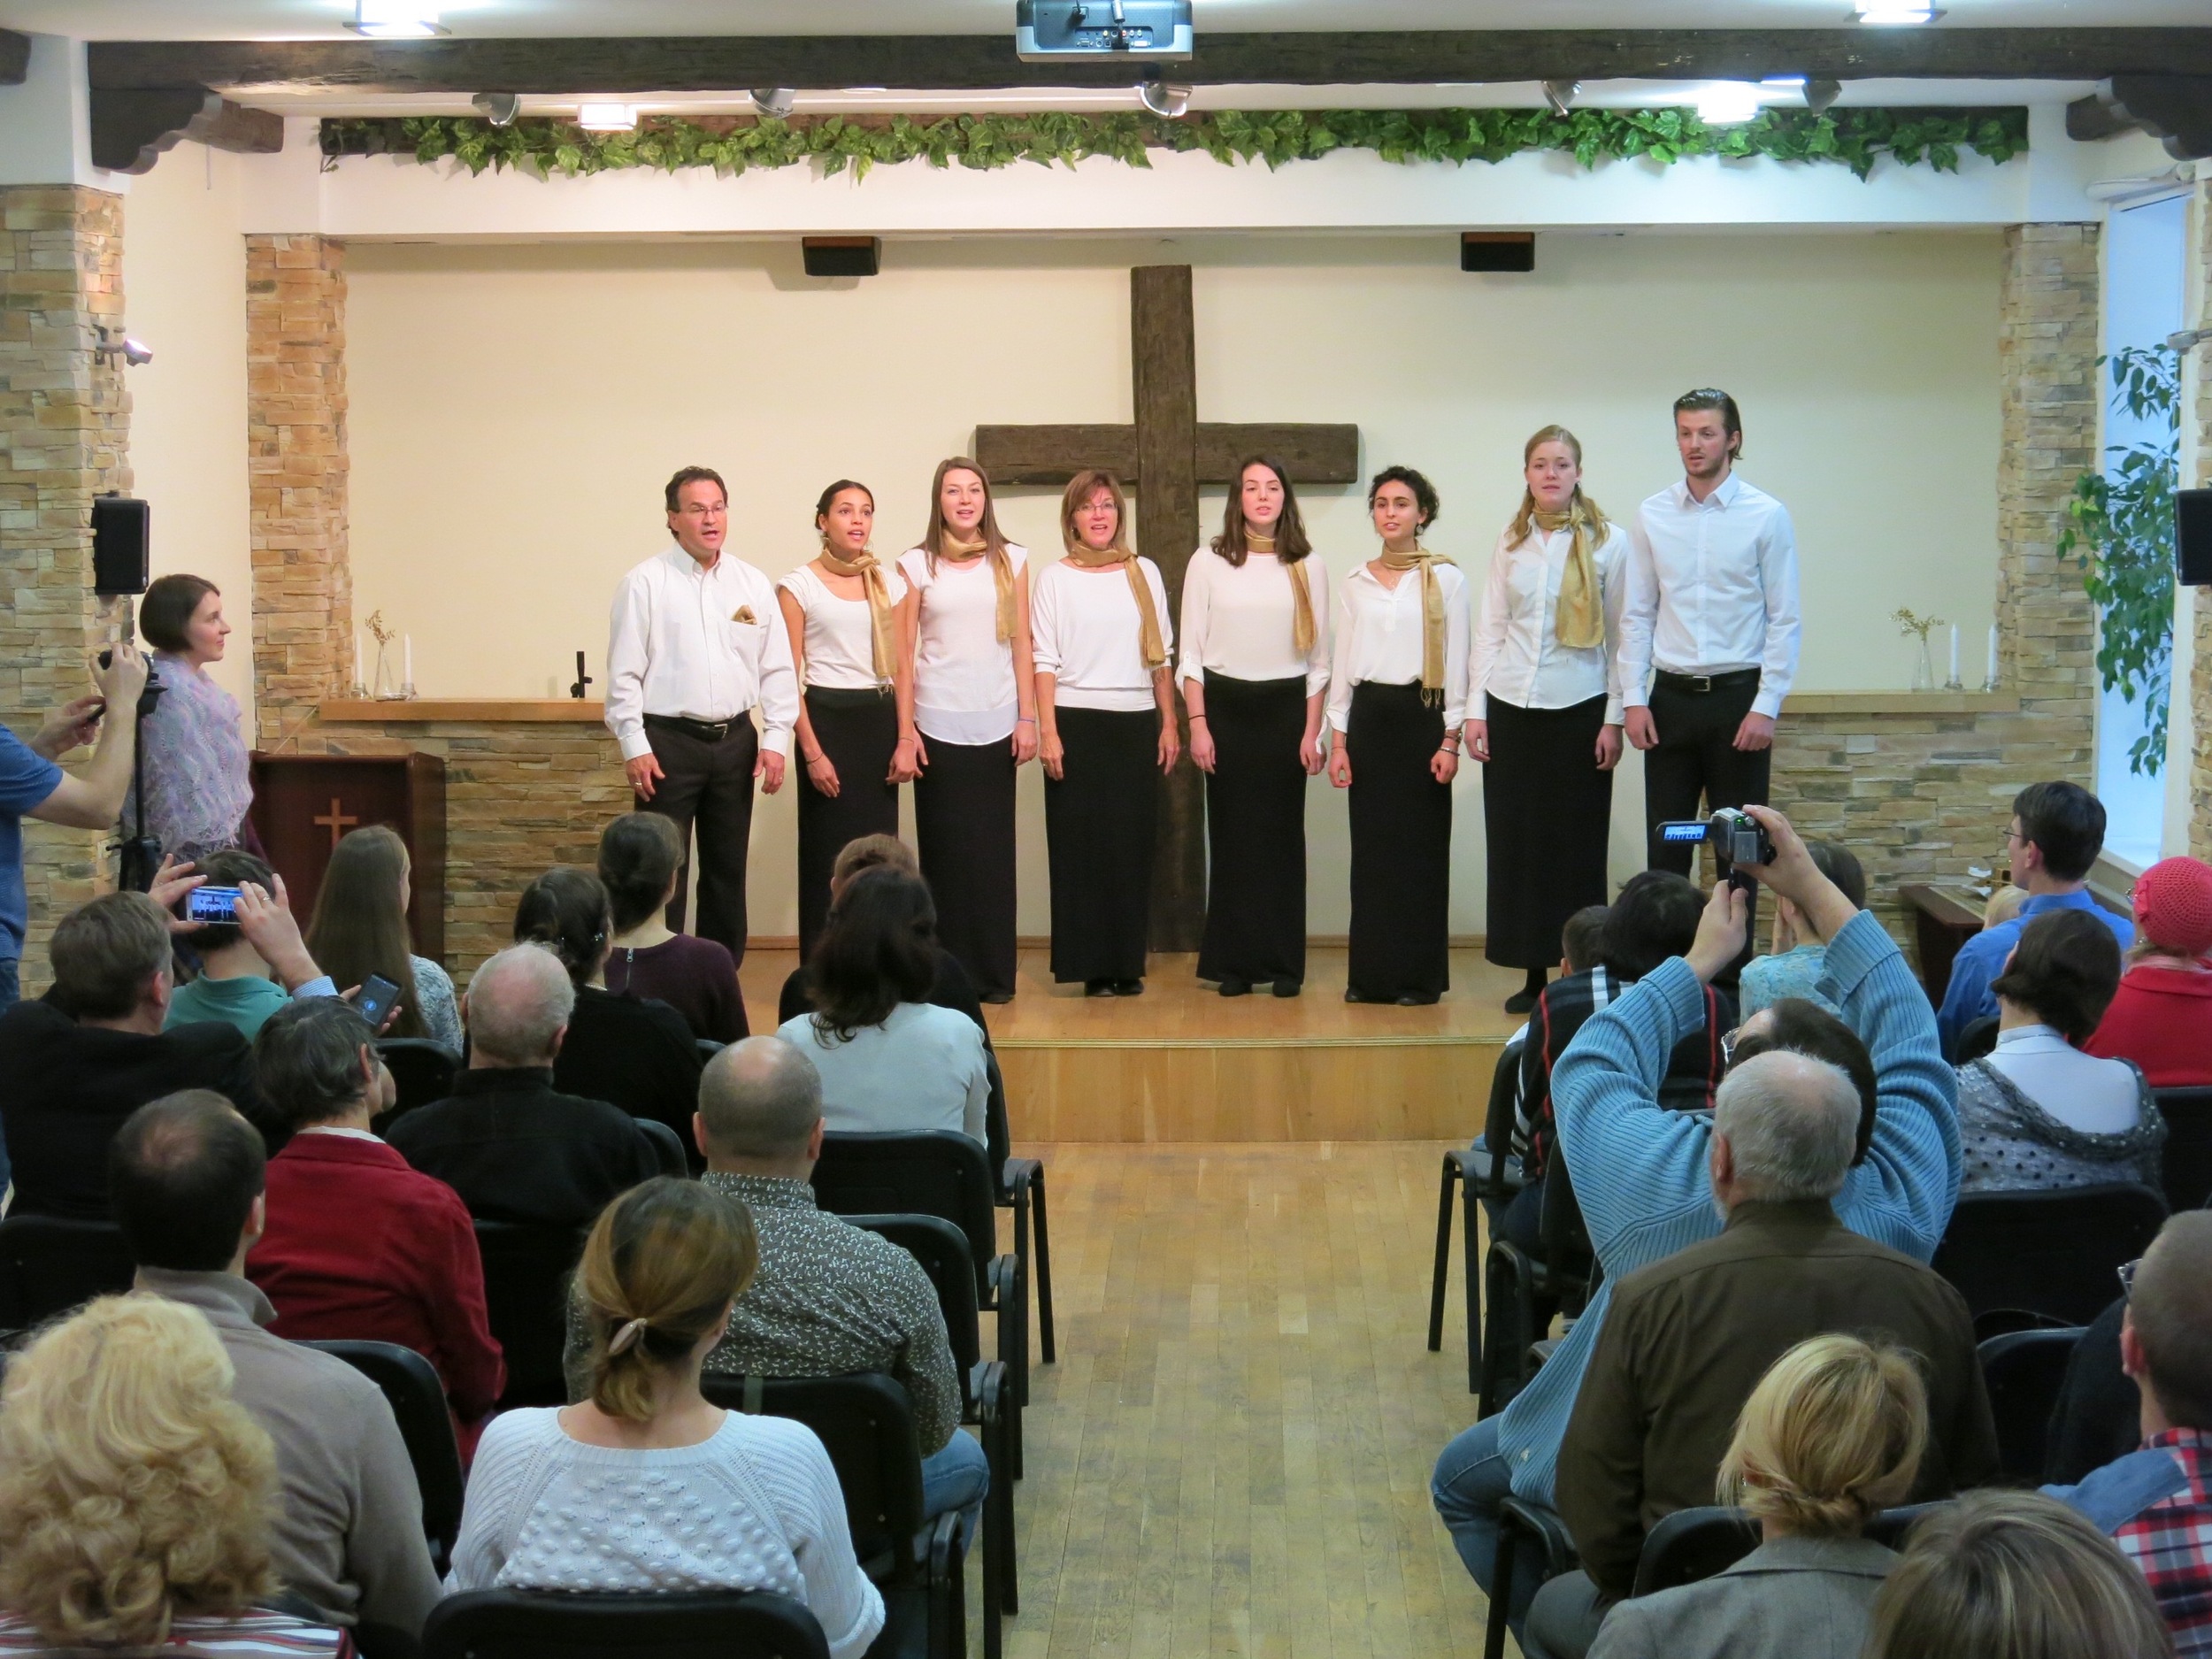  Concert à Saint Pétersbourg, Russie  Chorale Harmonie  